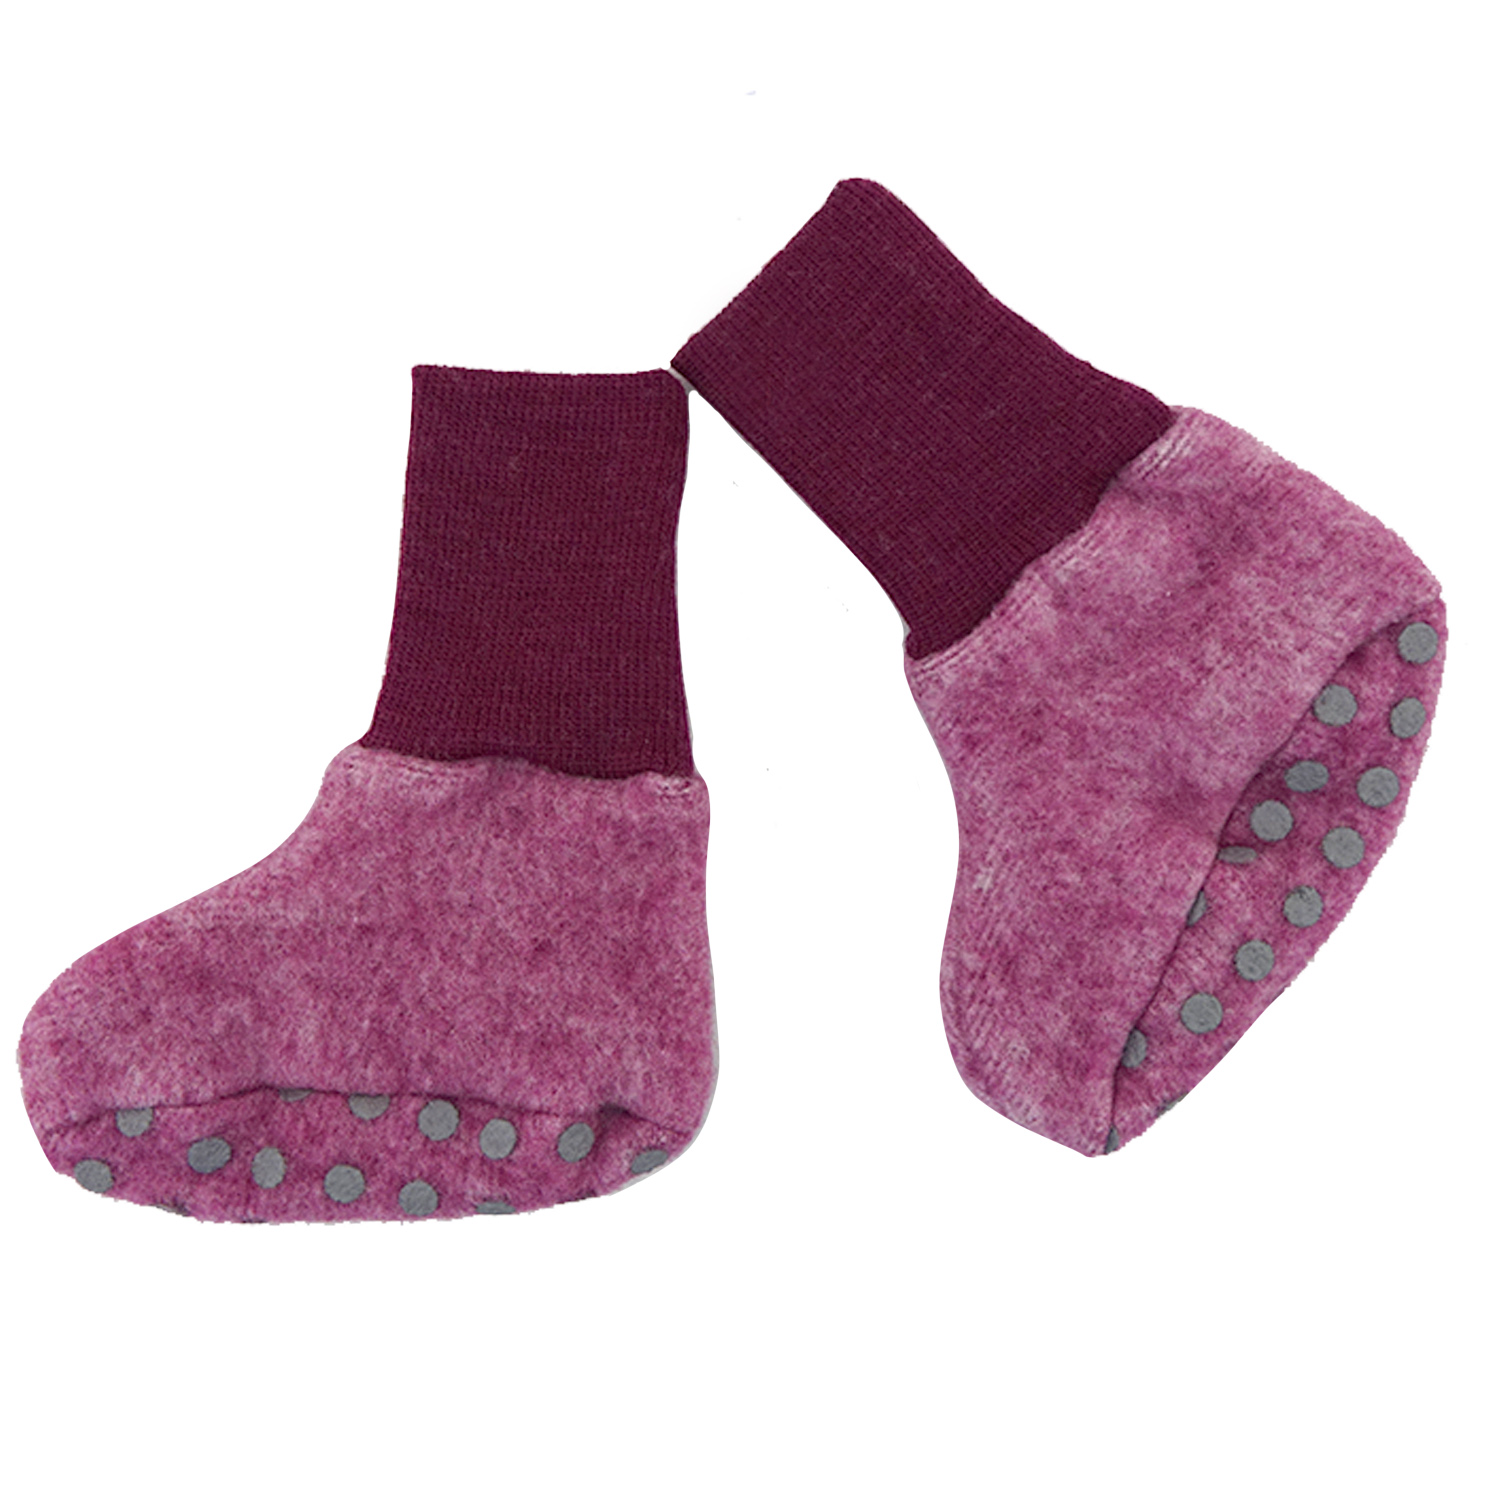 Cosilana baby shoes (wool/cotton fleece) (Size: 074/080 (mit Stopper) / Colour: 139 bordeaux)